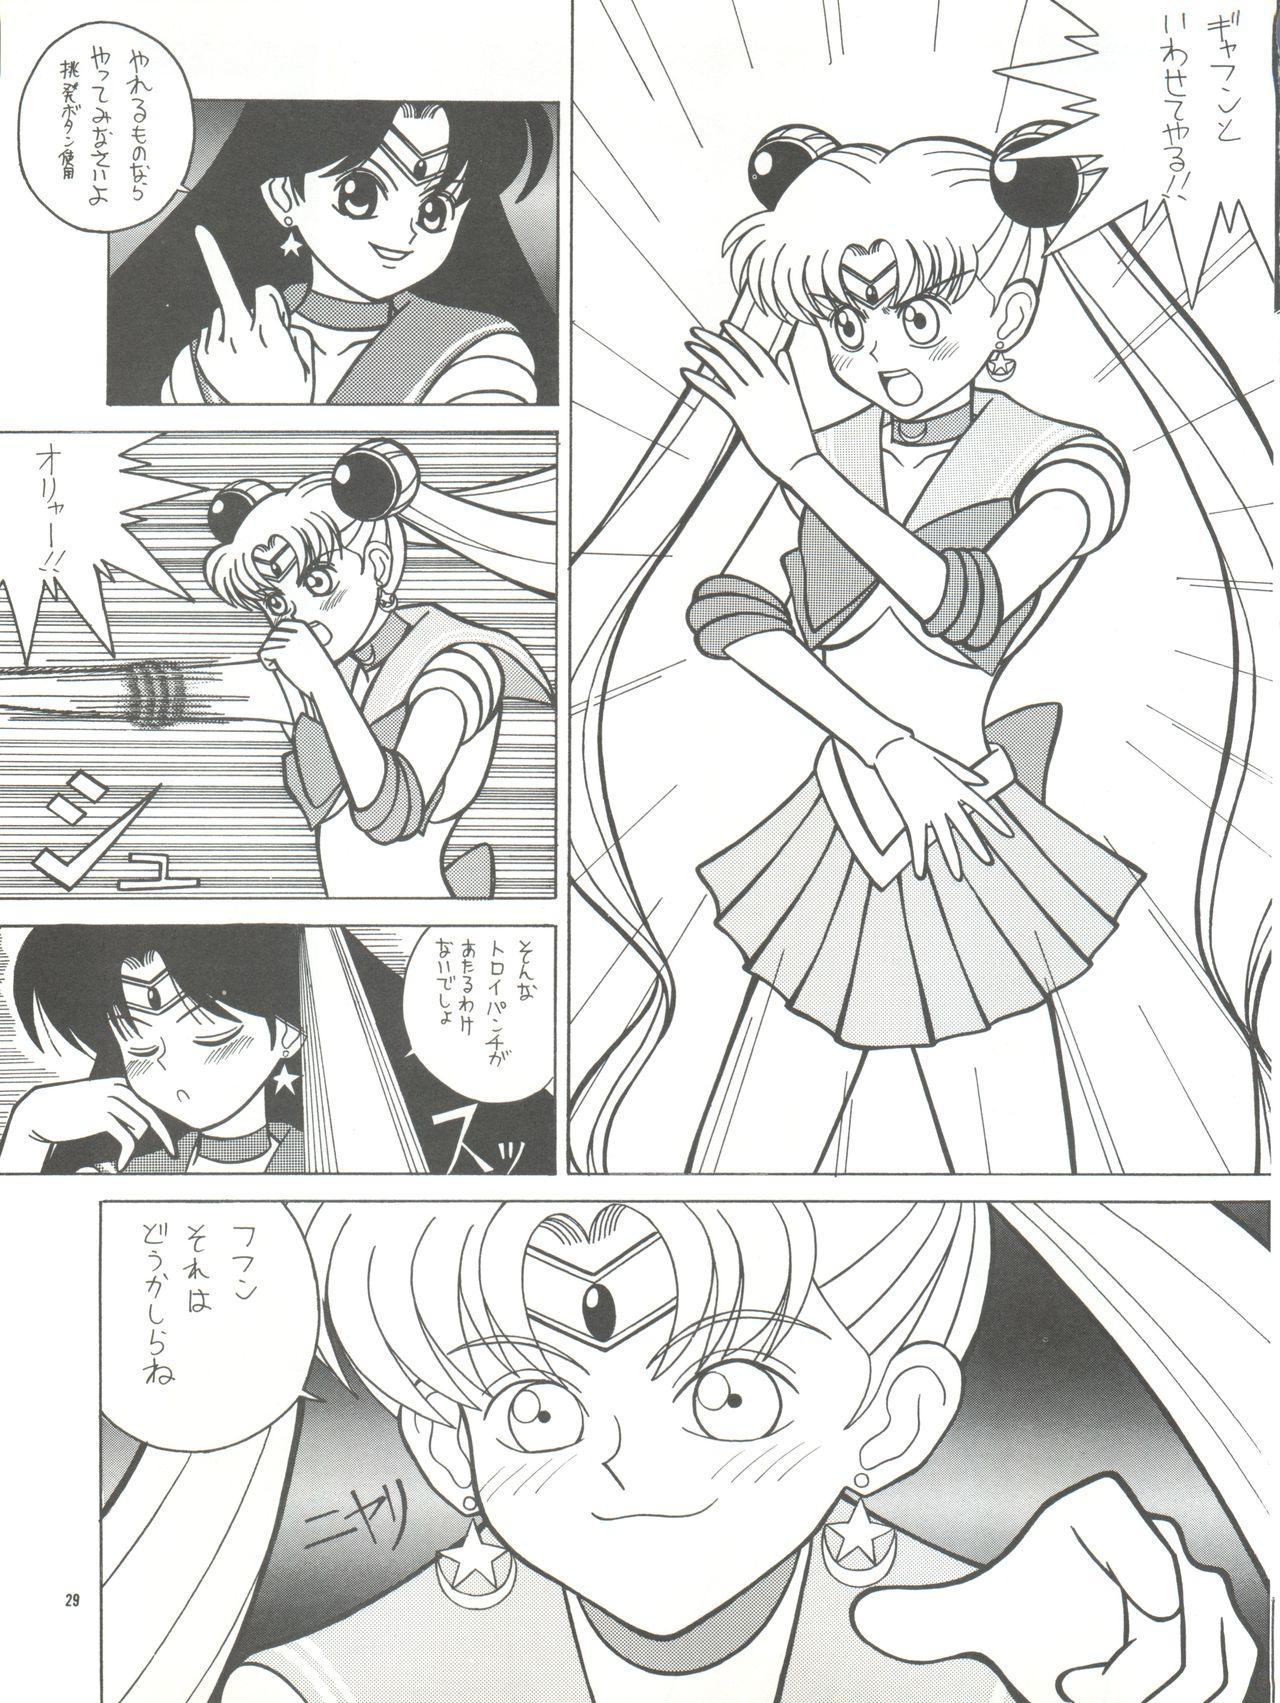 PUSSY CAT Vol. 26 Sailor Moon 3 28